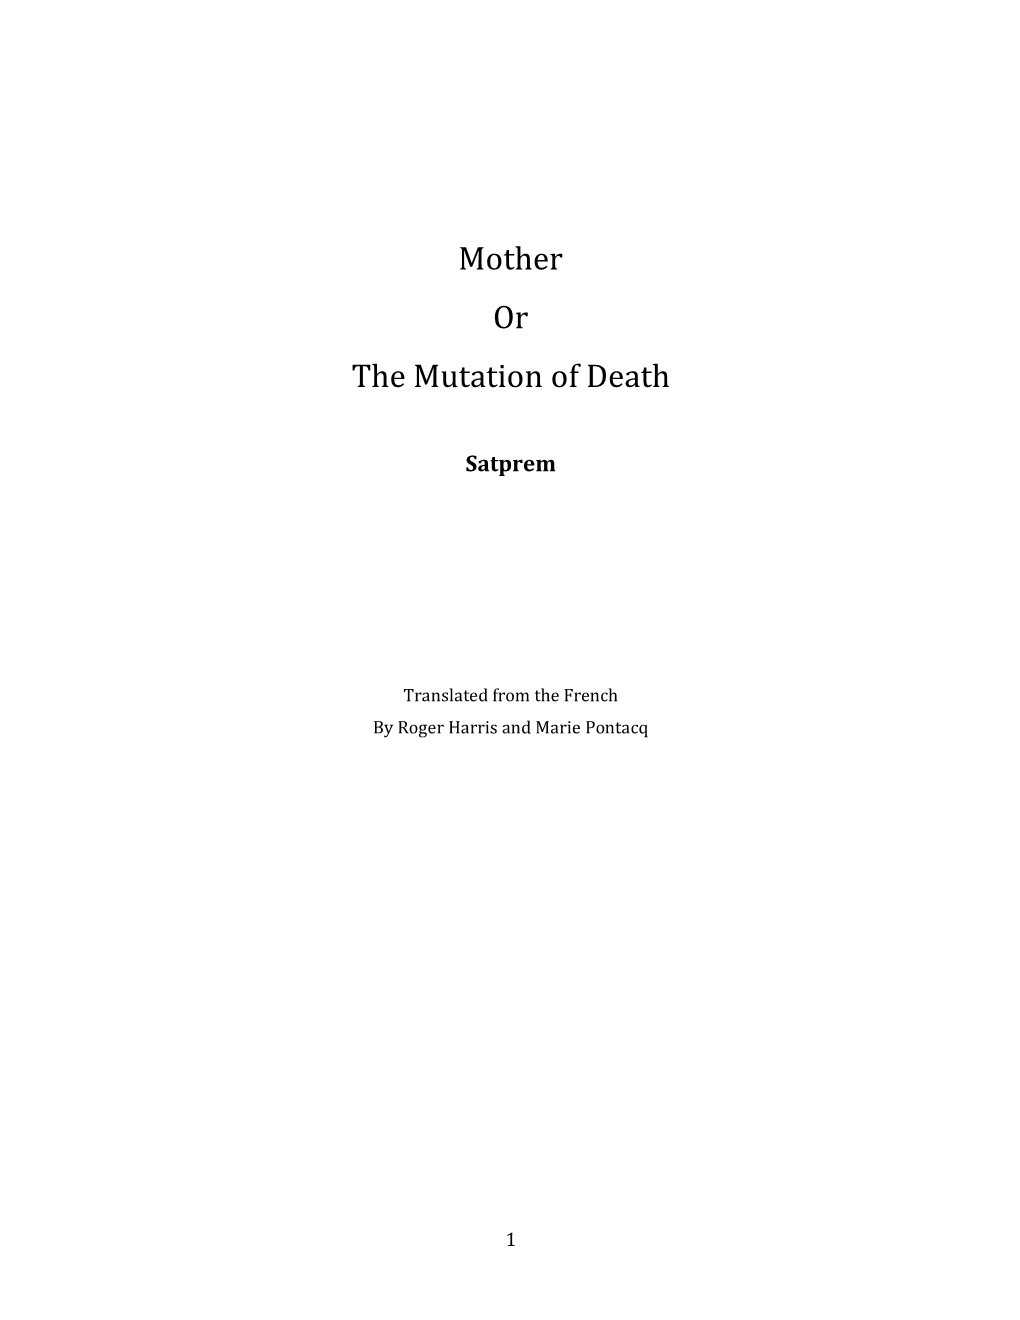 Mutation of Death (PDF)